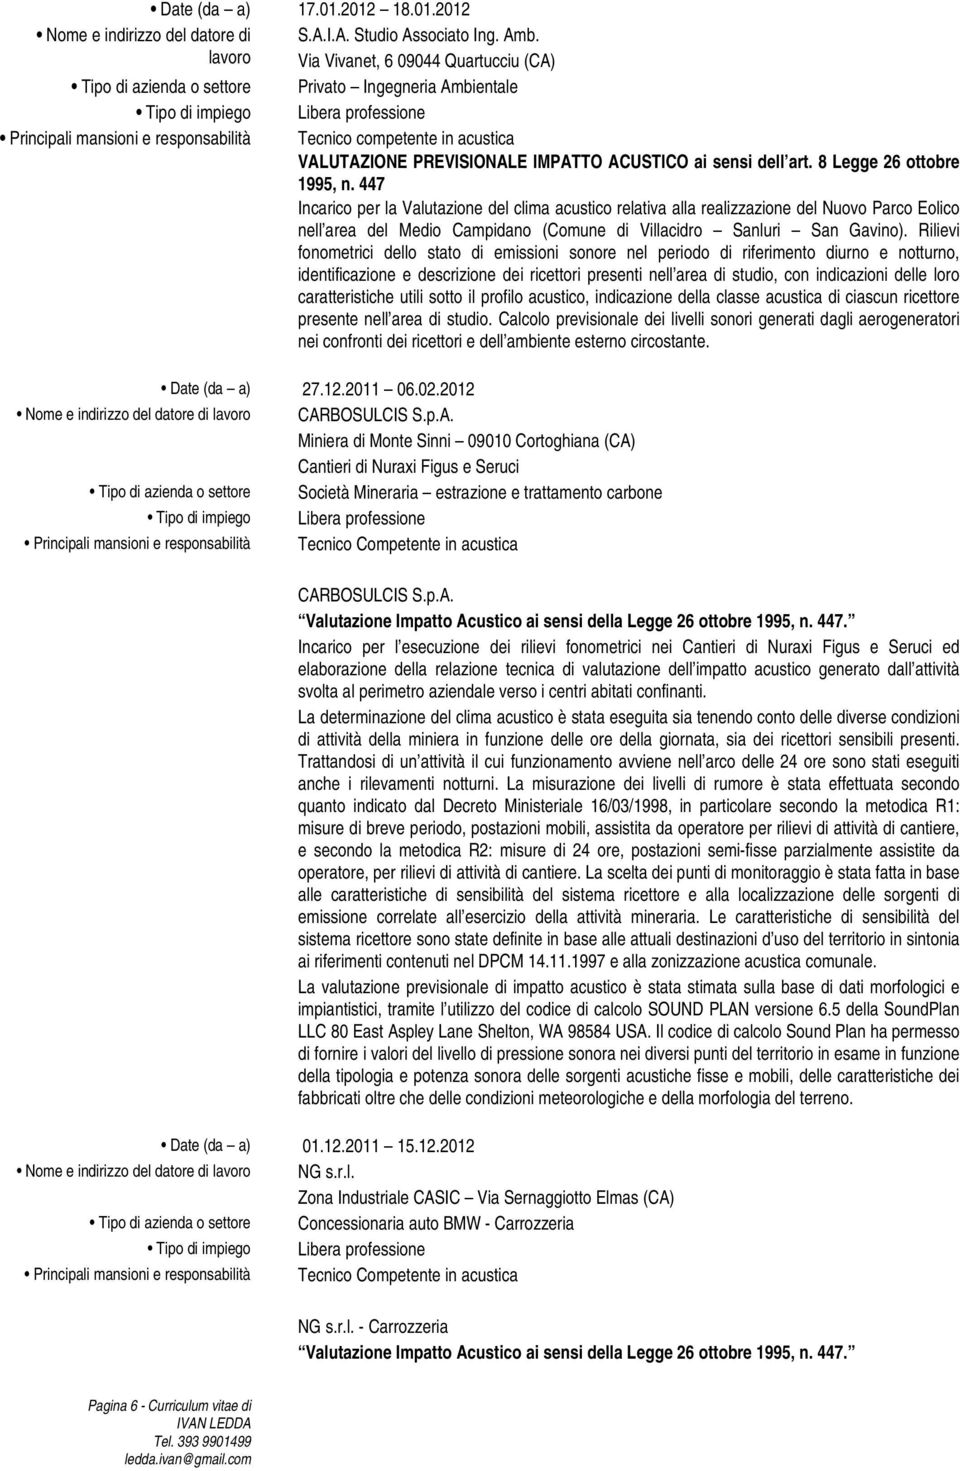 447 Incarico per la Valutazione del clima acustico relativa alla realizzazione del Nuovo Parco Eolico nell area del Medio Campidano (Comune di Villacidro Sanluri San Gavino).